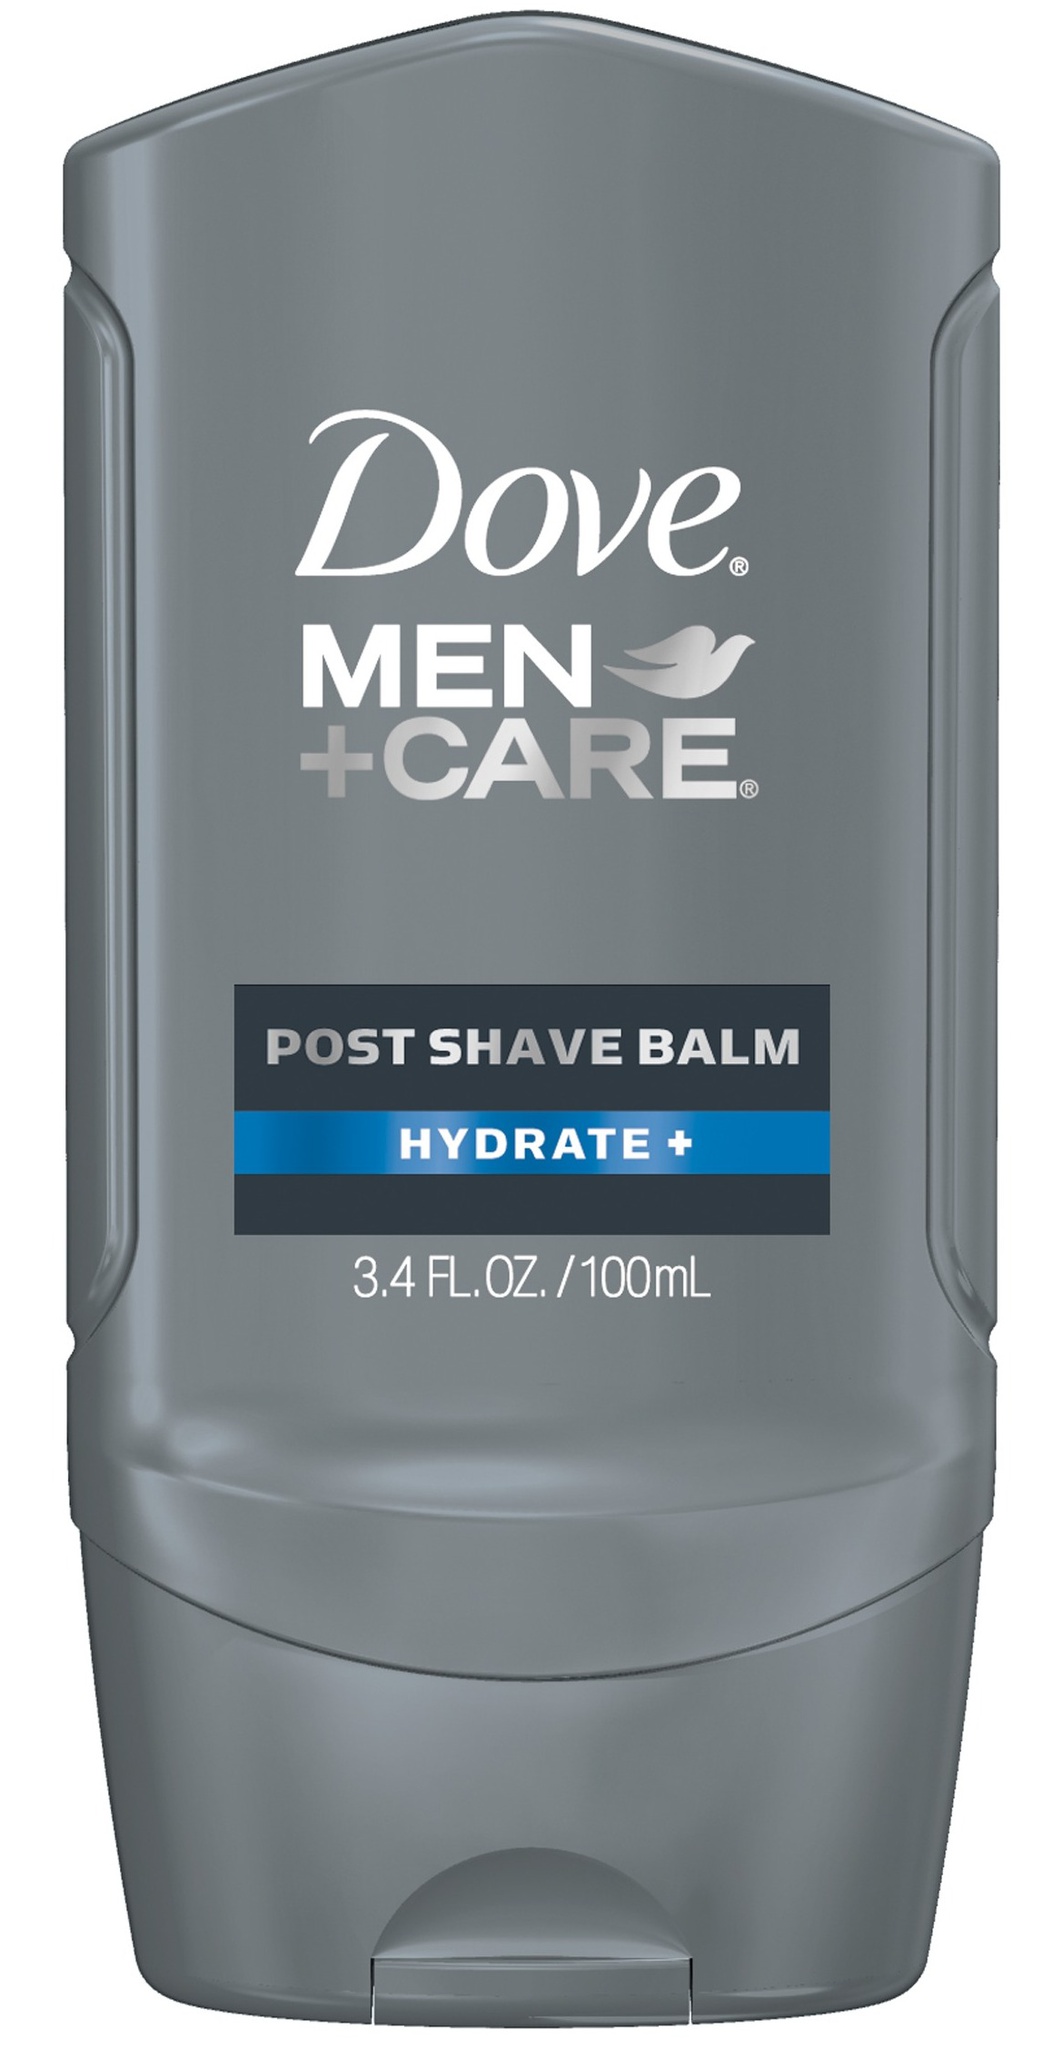 Dove Men+care Hydrate Post Shave Balm